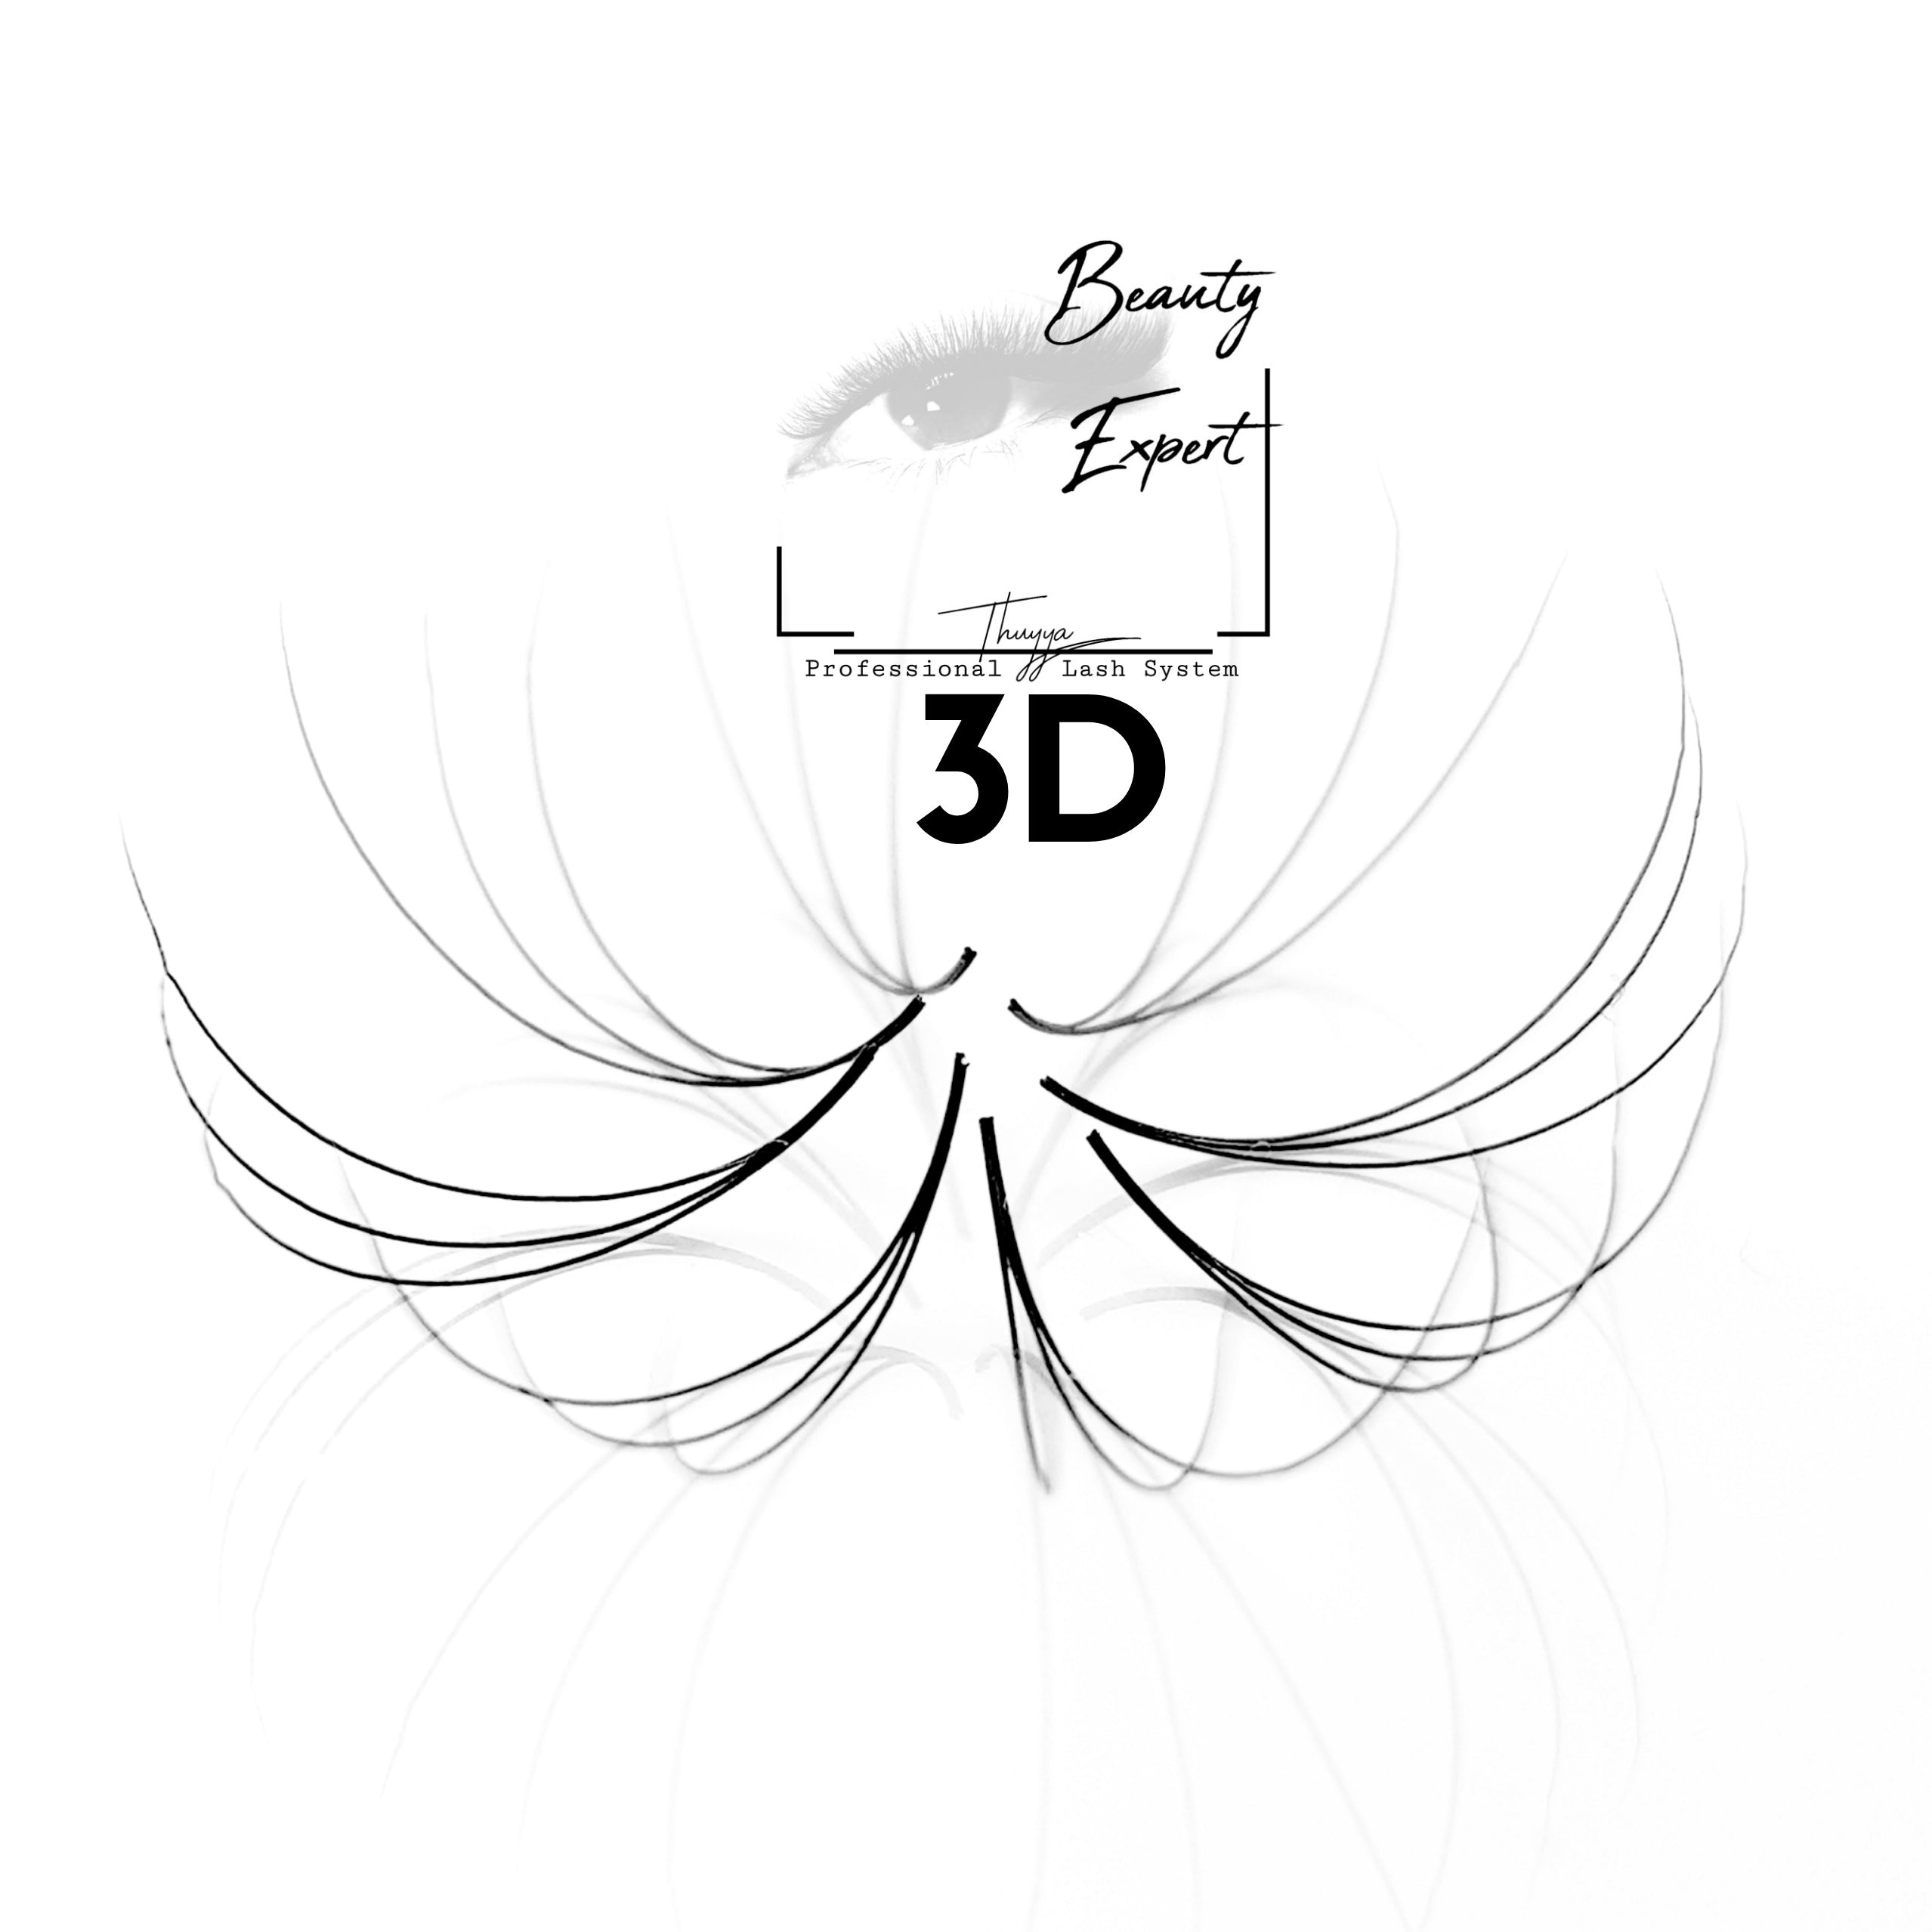 3D handmade Wimpernfächer für Wimpernverlängerung.